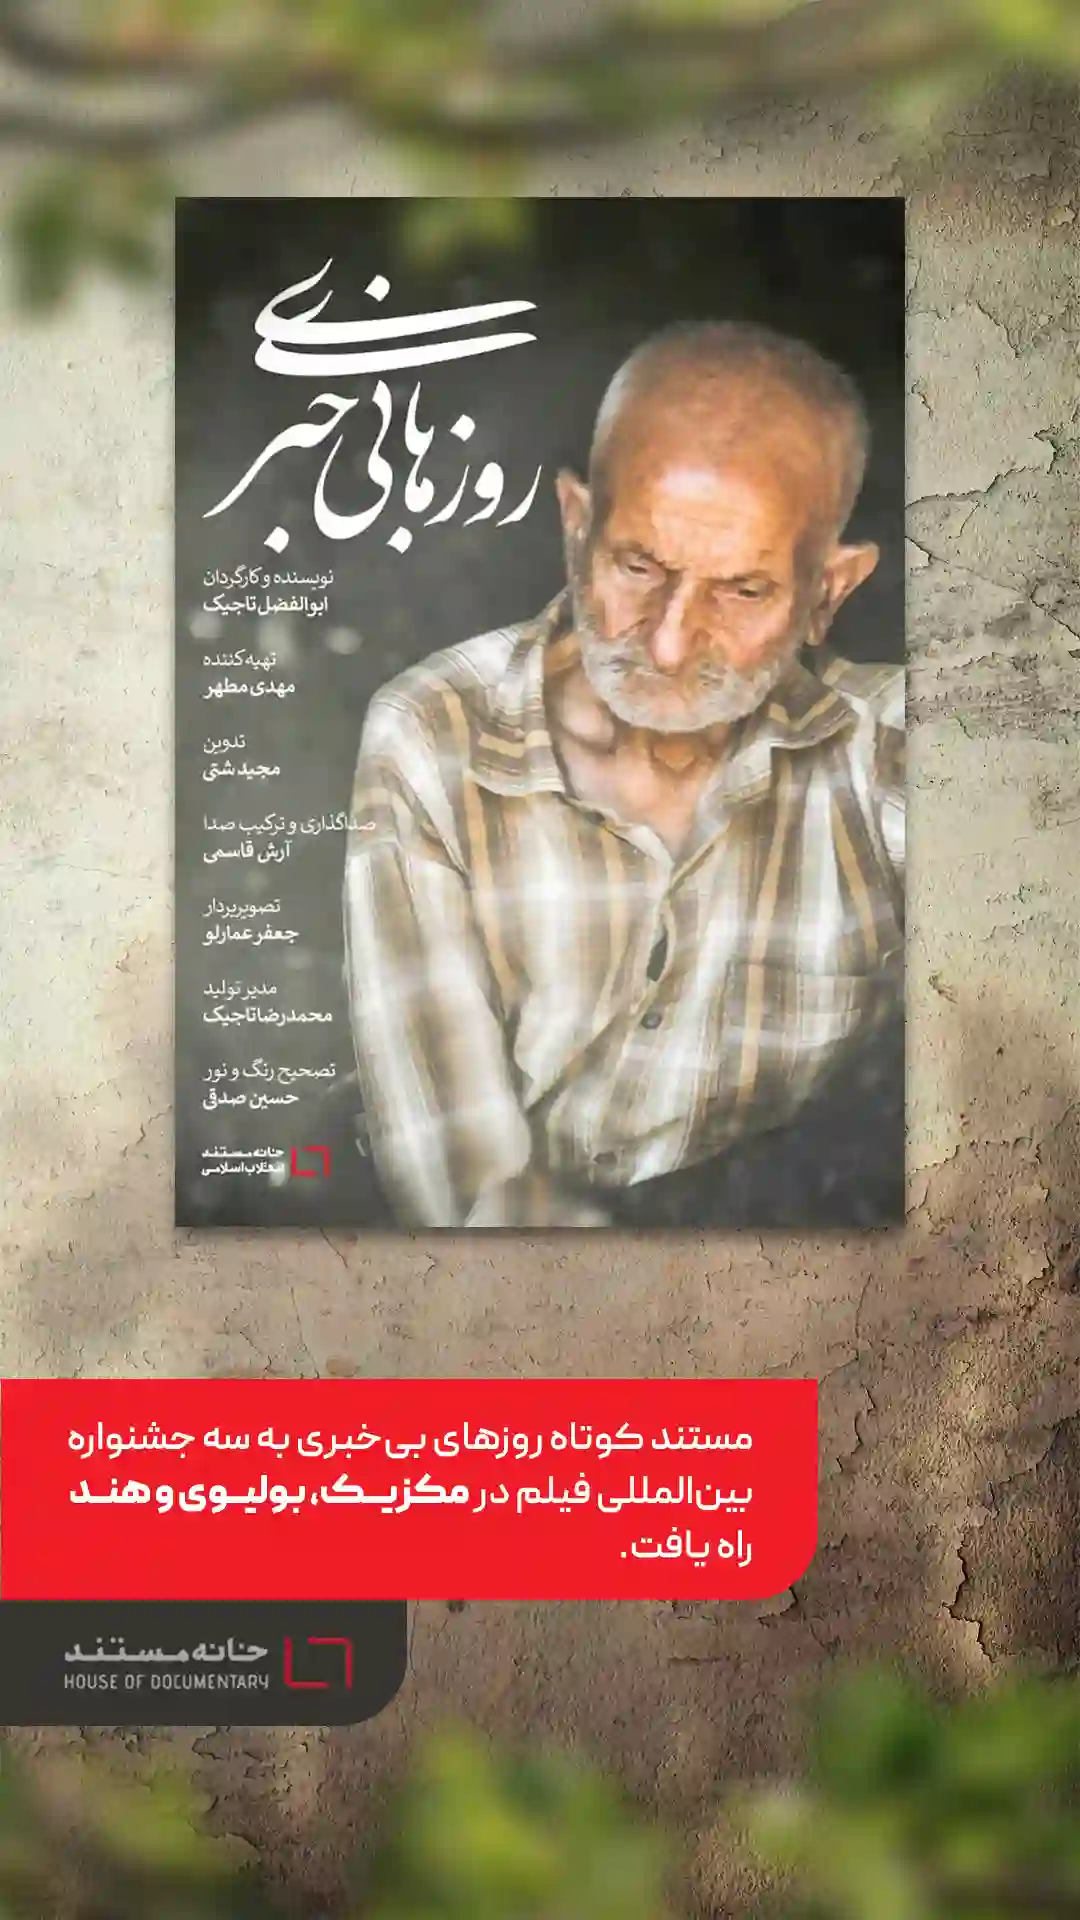 مستند ایرانی «روزهای بی خبری» به سه جشنواره بین المللی راه یافت